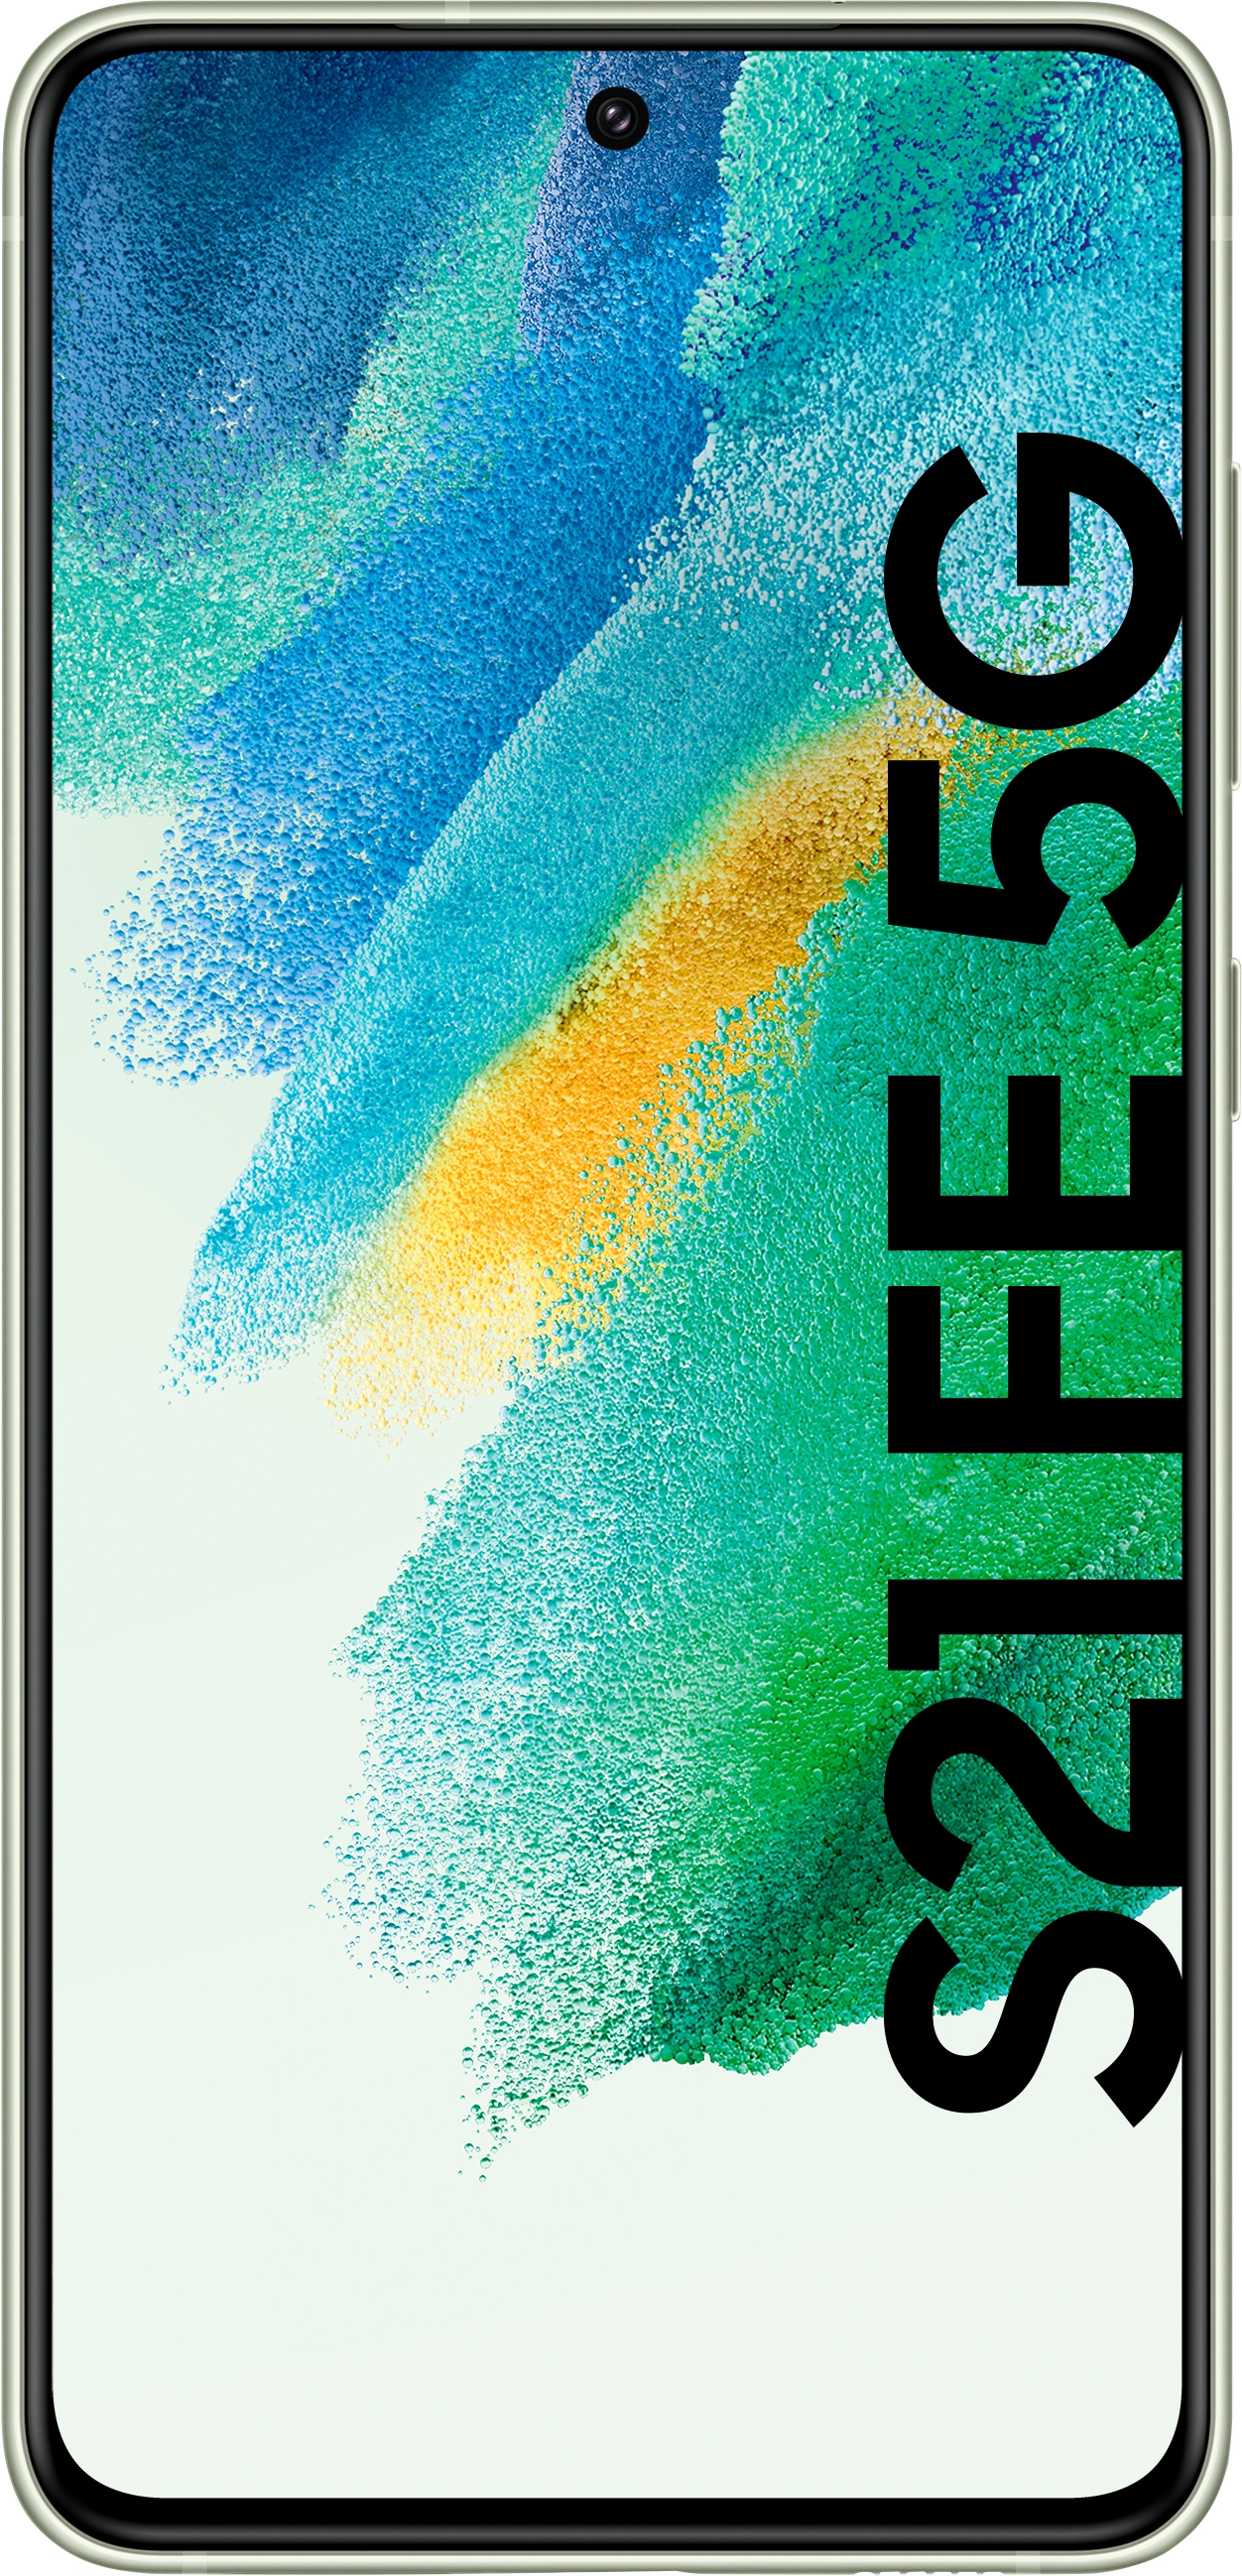 SAMSUNG Galaxy S21 FE 5G, 128 GB, Olive